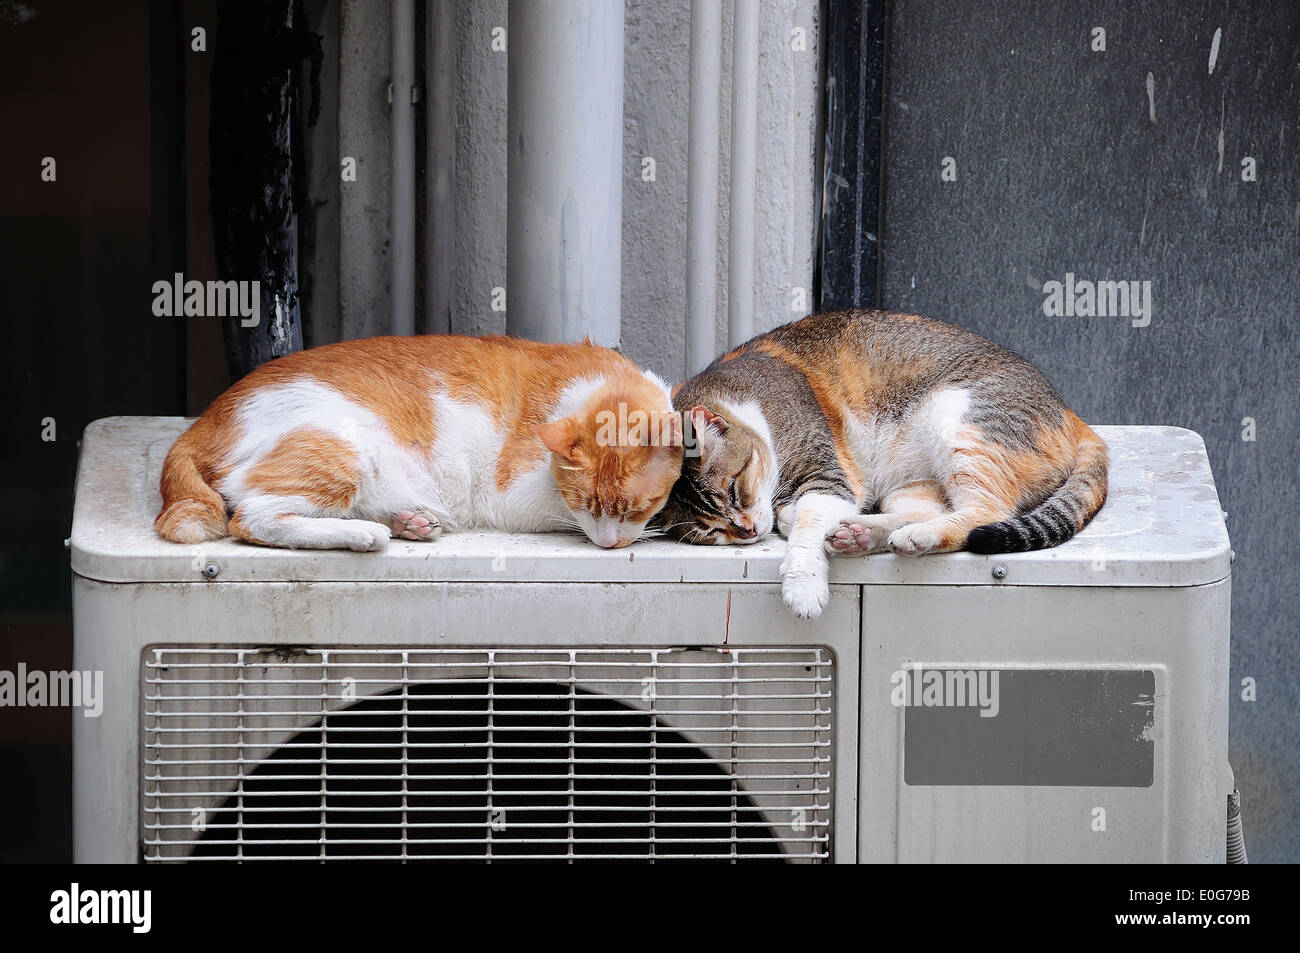 Faule Katze paar schlafend im Freien auf einer Klimaanlage Ventilator, Hong  Kong Stockfotografie - Alamy